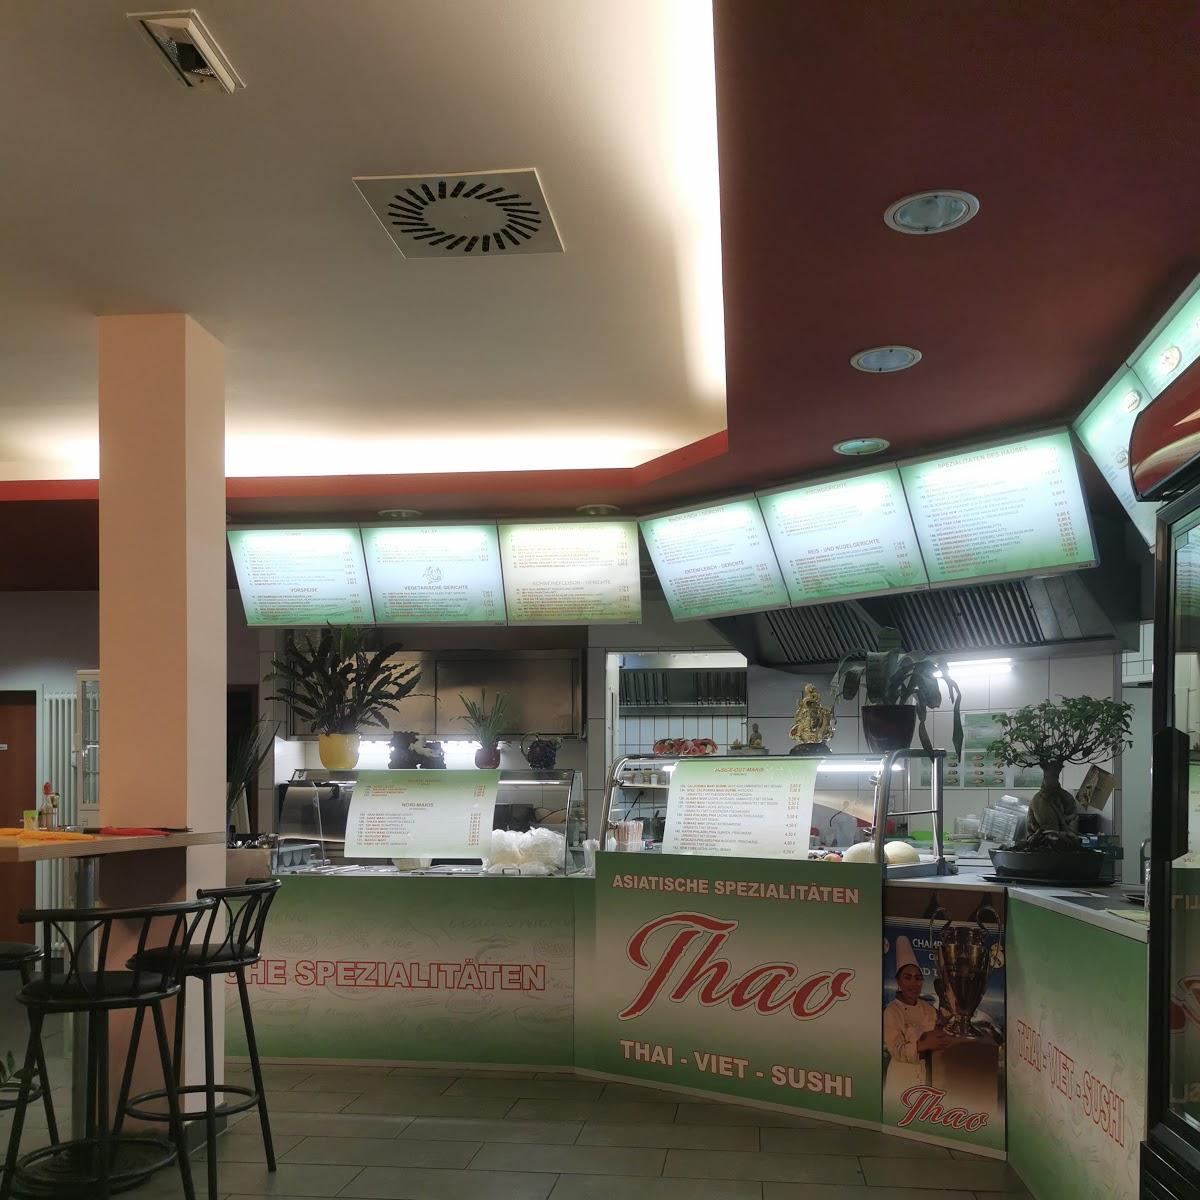 Restaurant "Thao - Asiatische Spezialitäten" in Eching